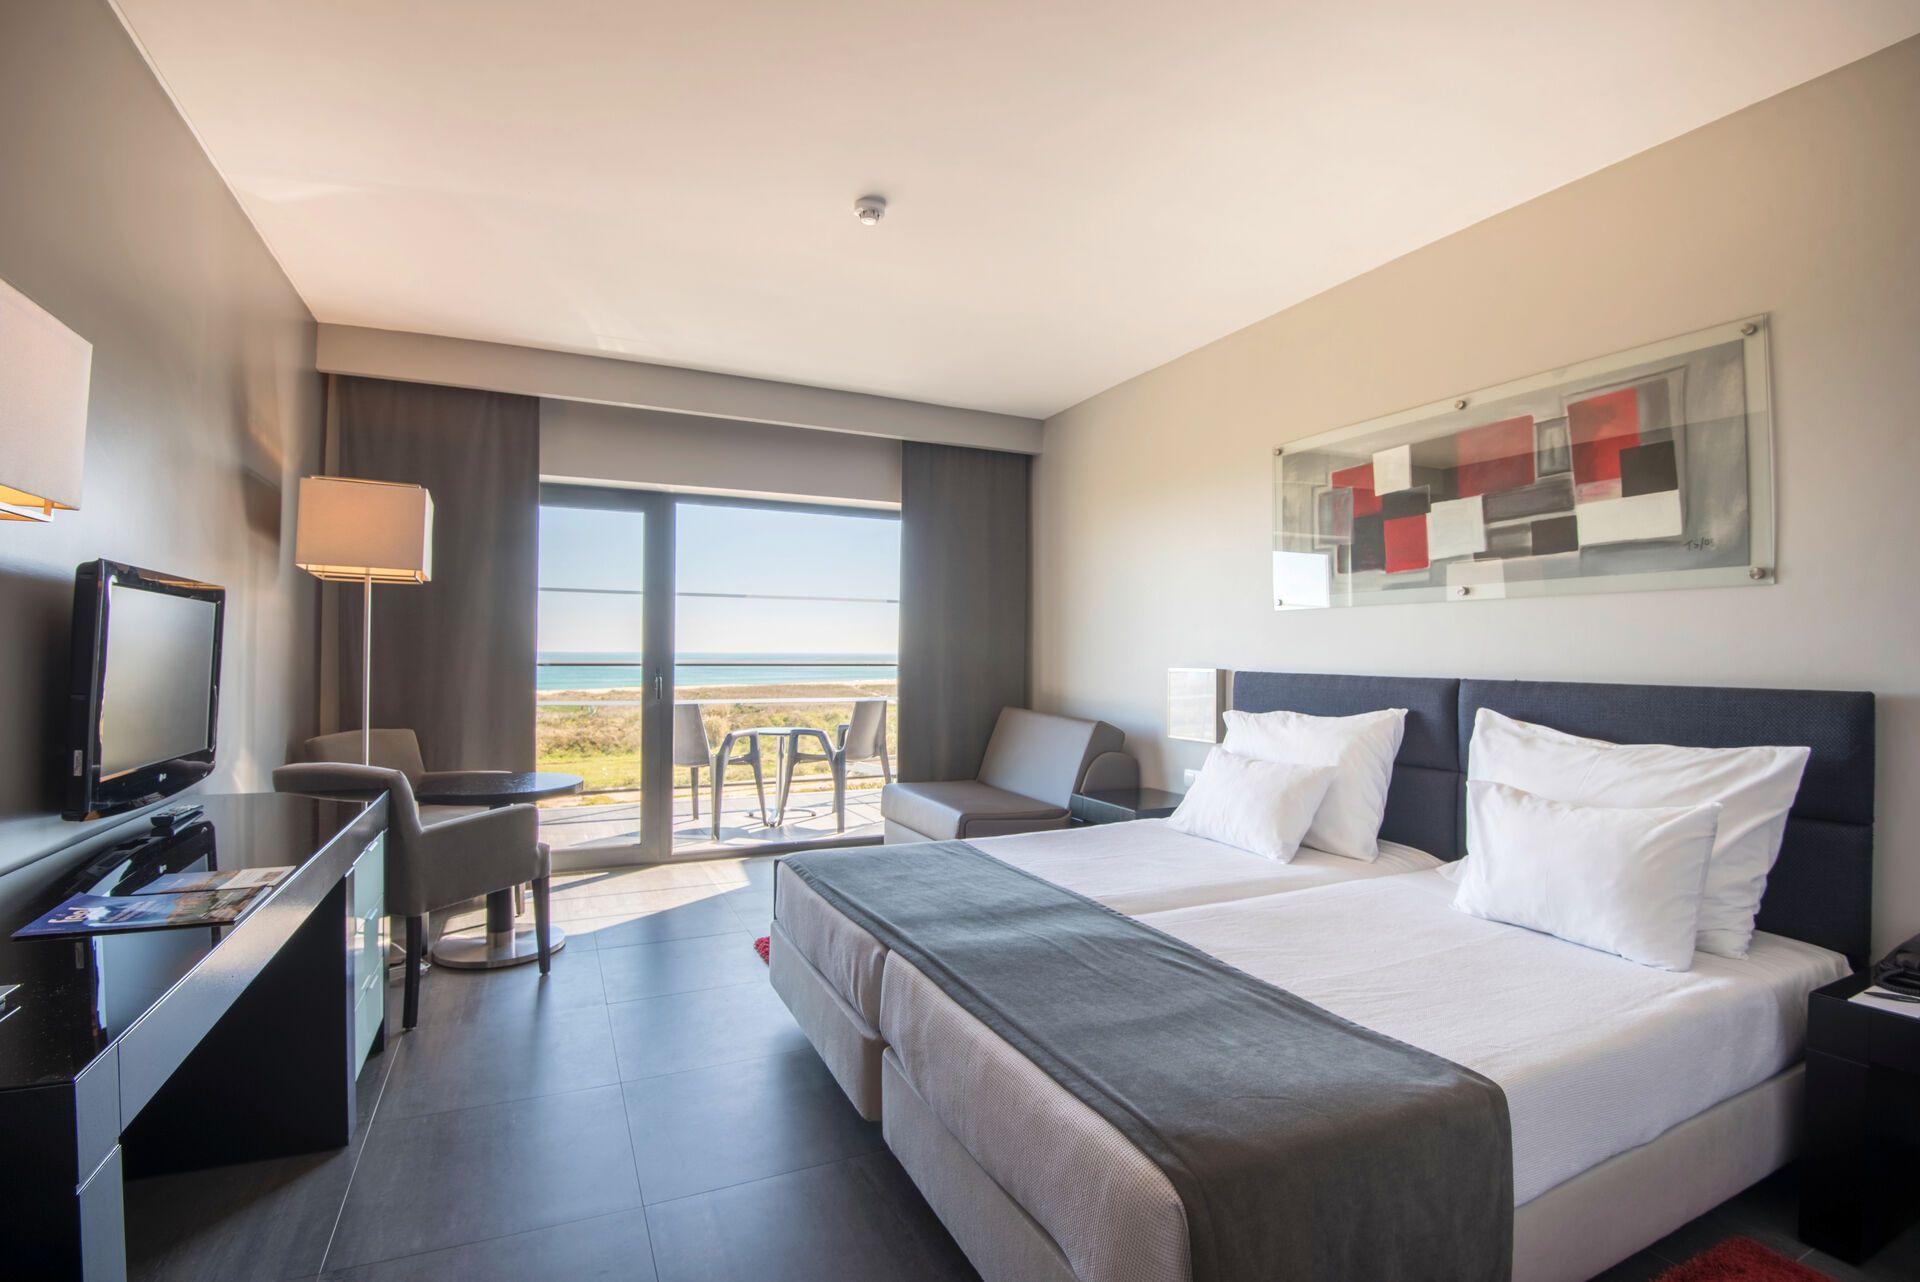 Portugal - Algarve - Faro - Hotel Vila Galé Lagos 4*